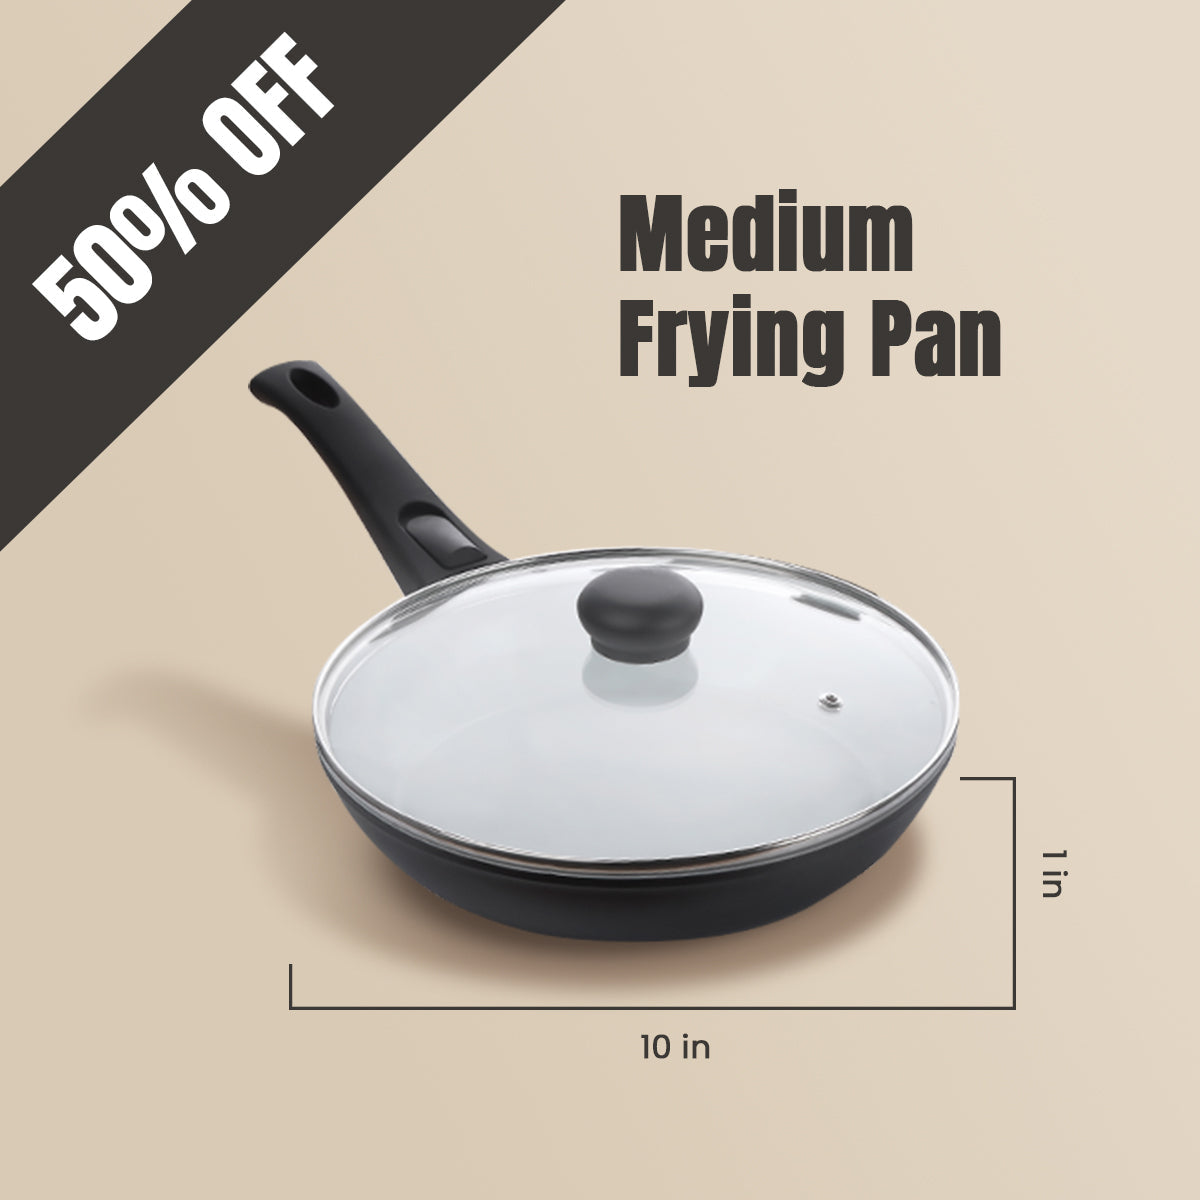 2 x P600 Cookware Frying Pan Set